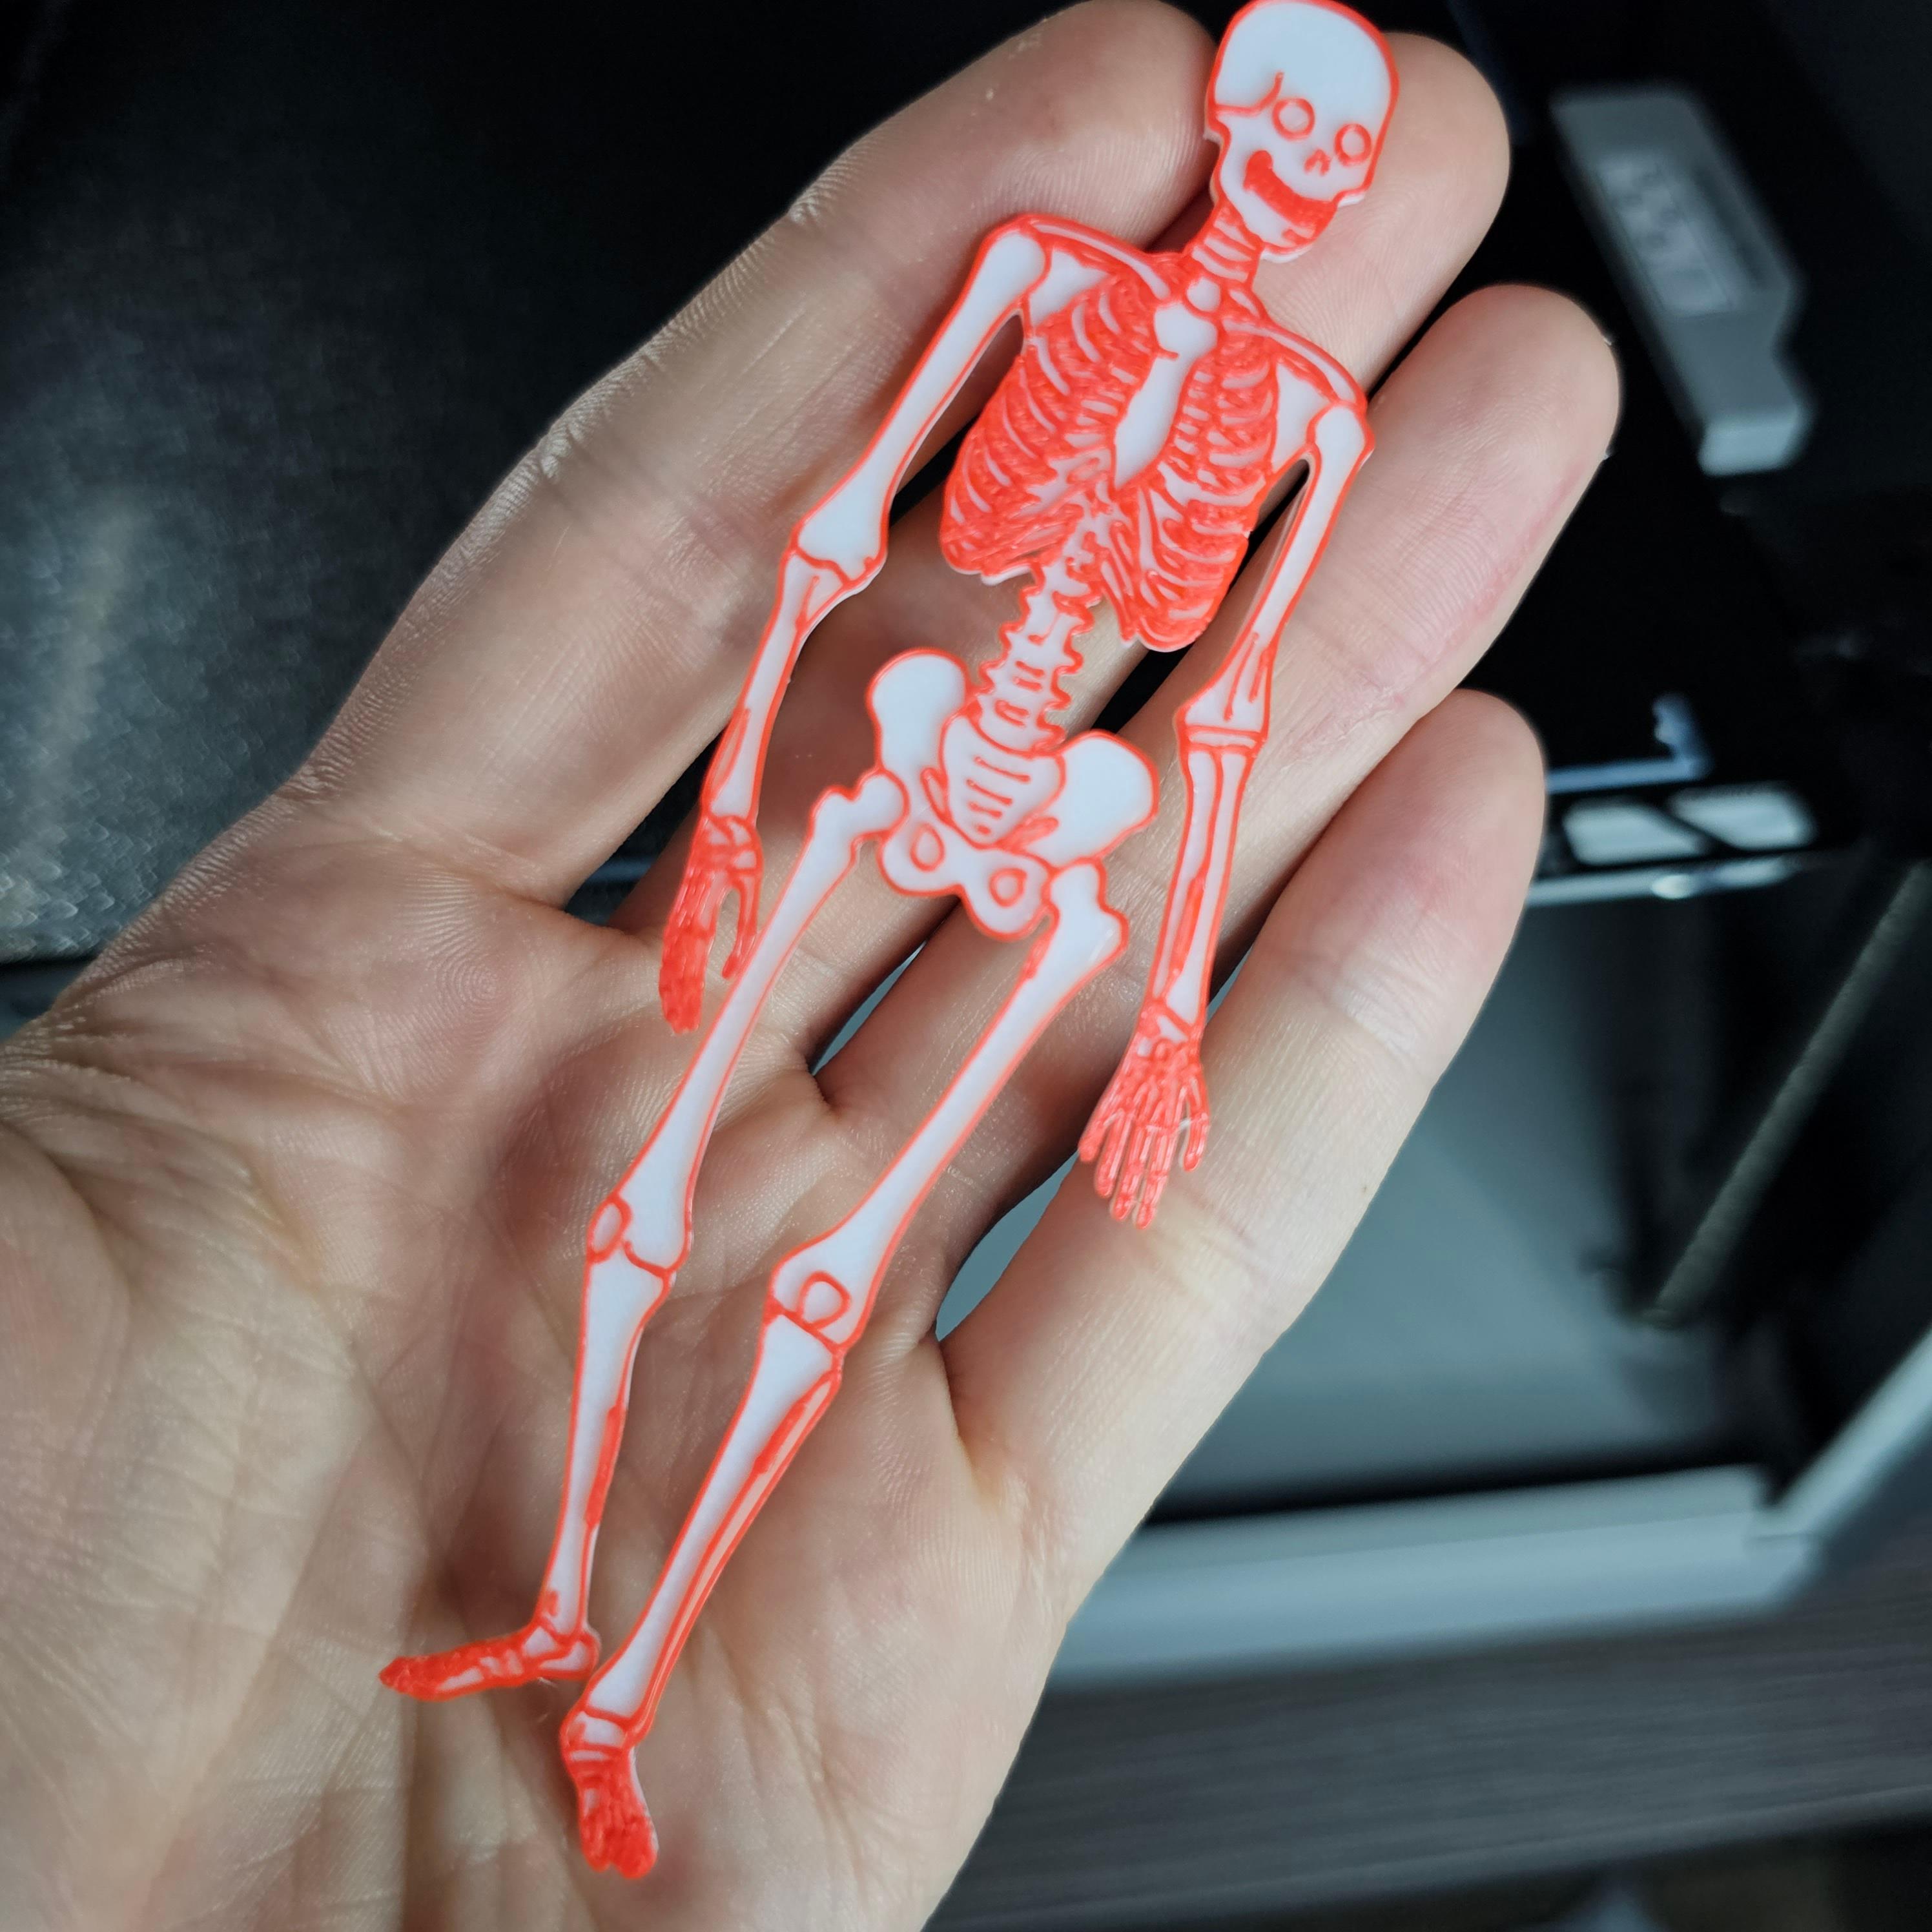 Skeleton 3d model